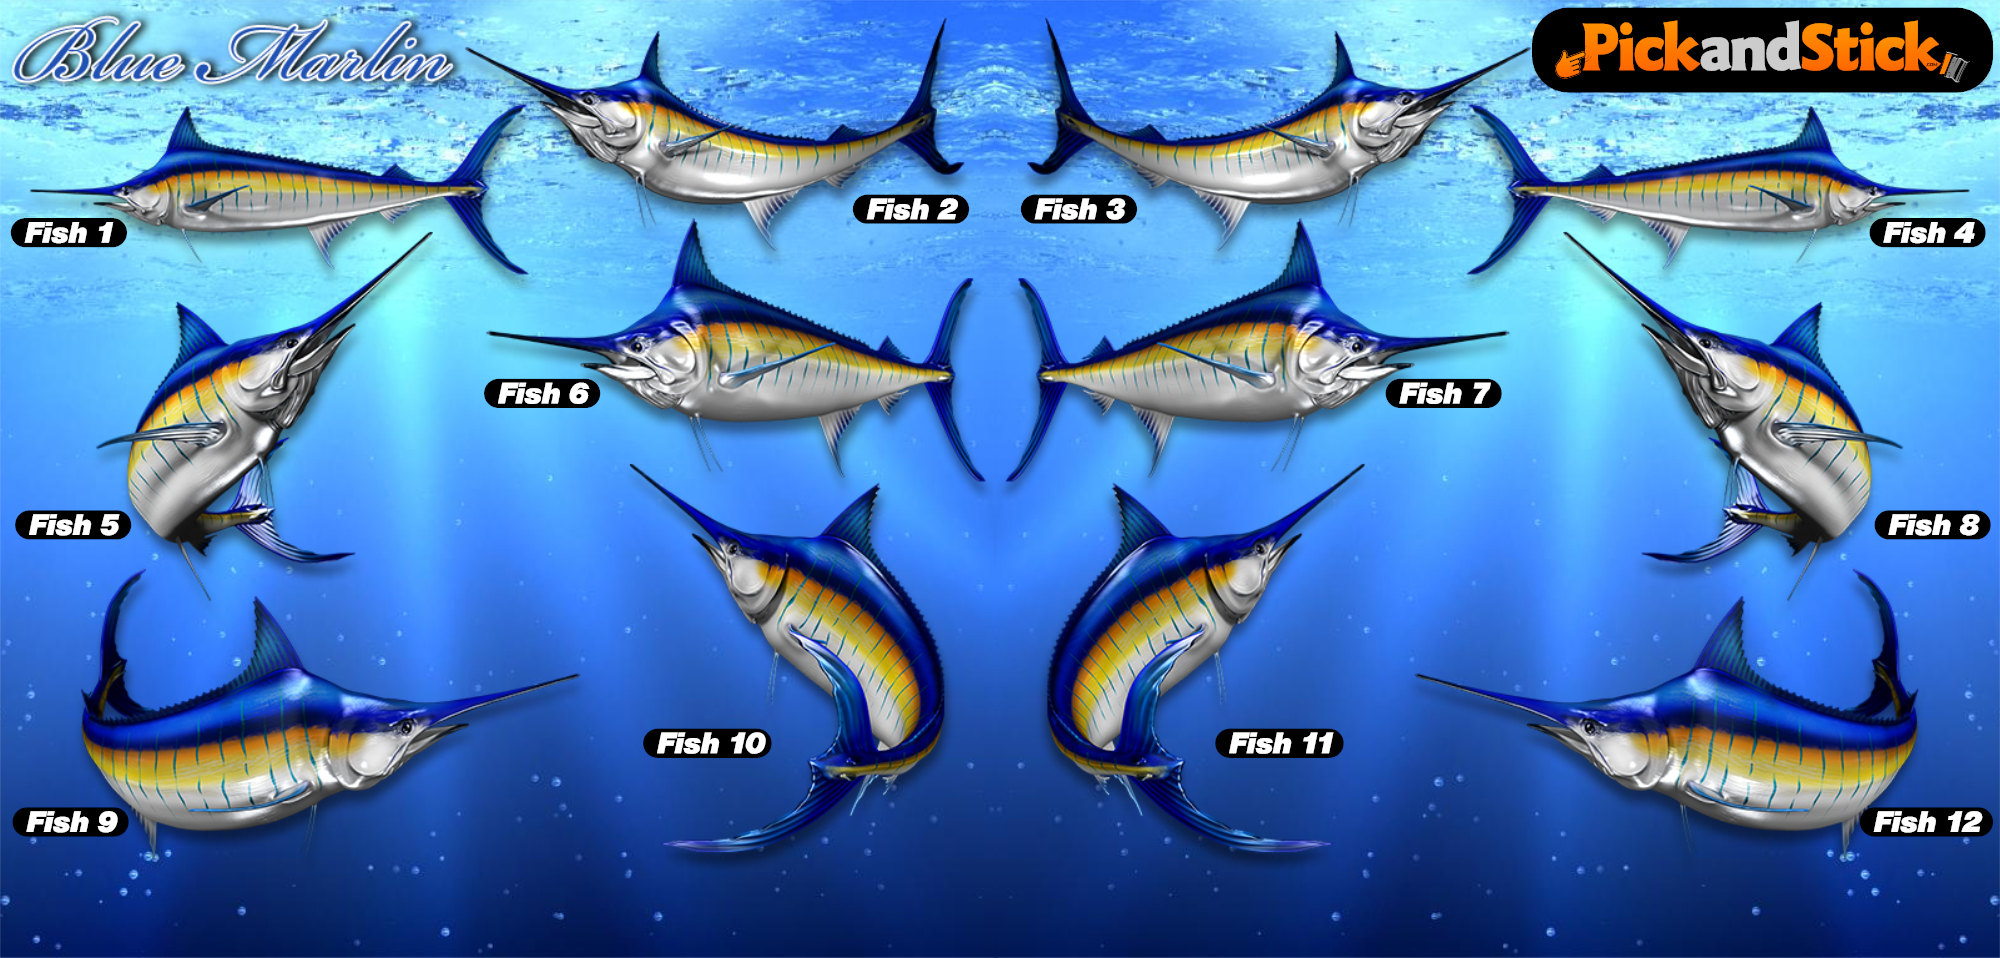 Blue Marlin Fish Decals - PickandStickcom